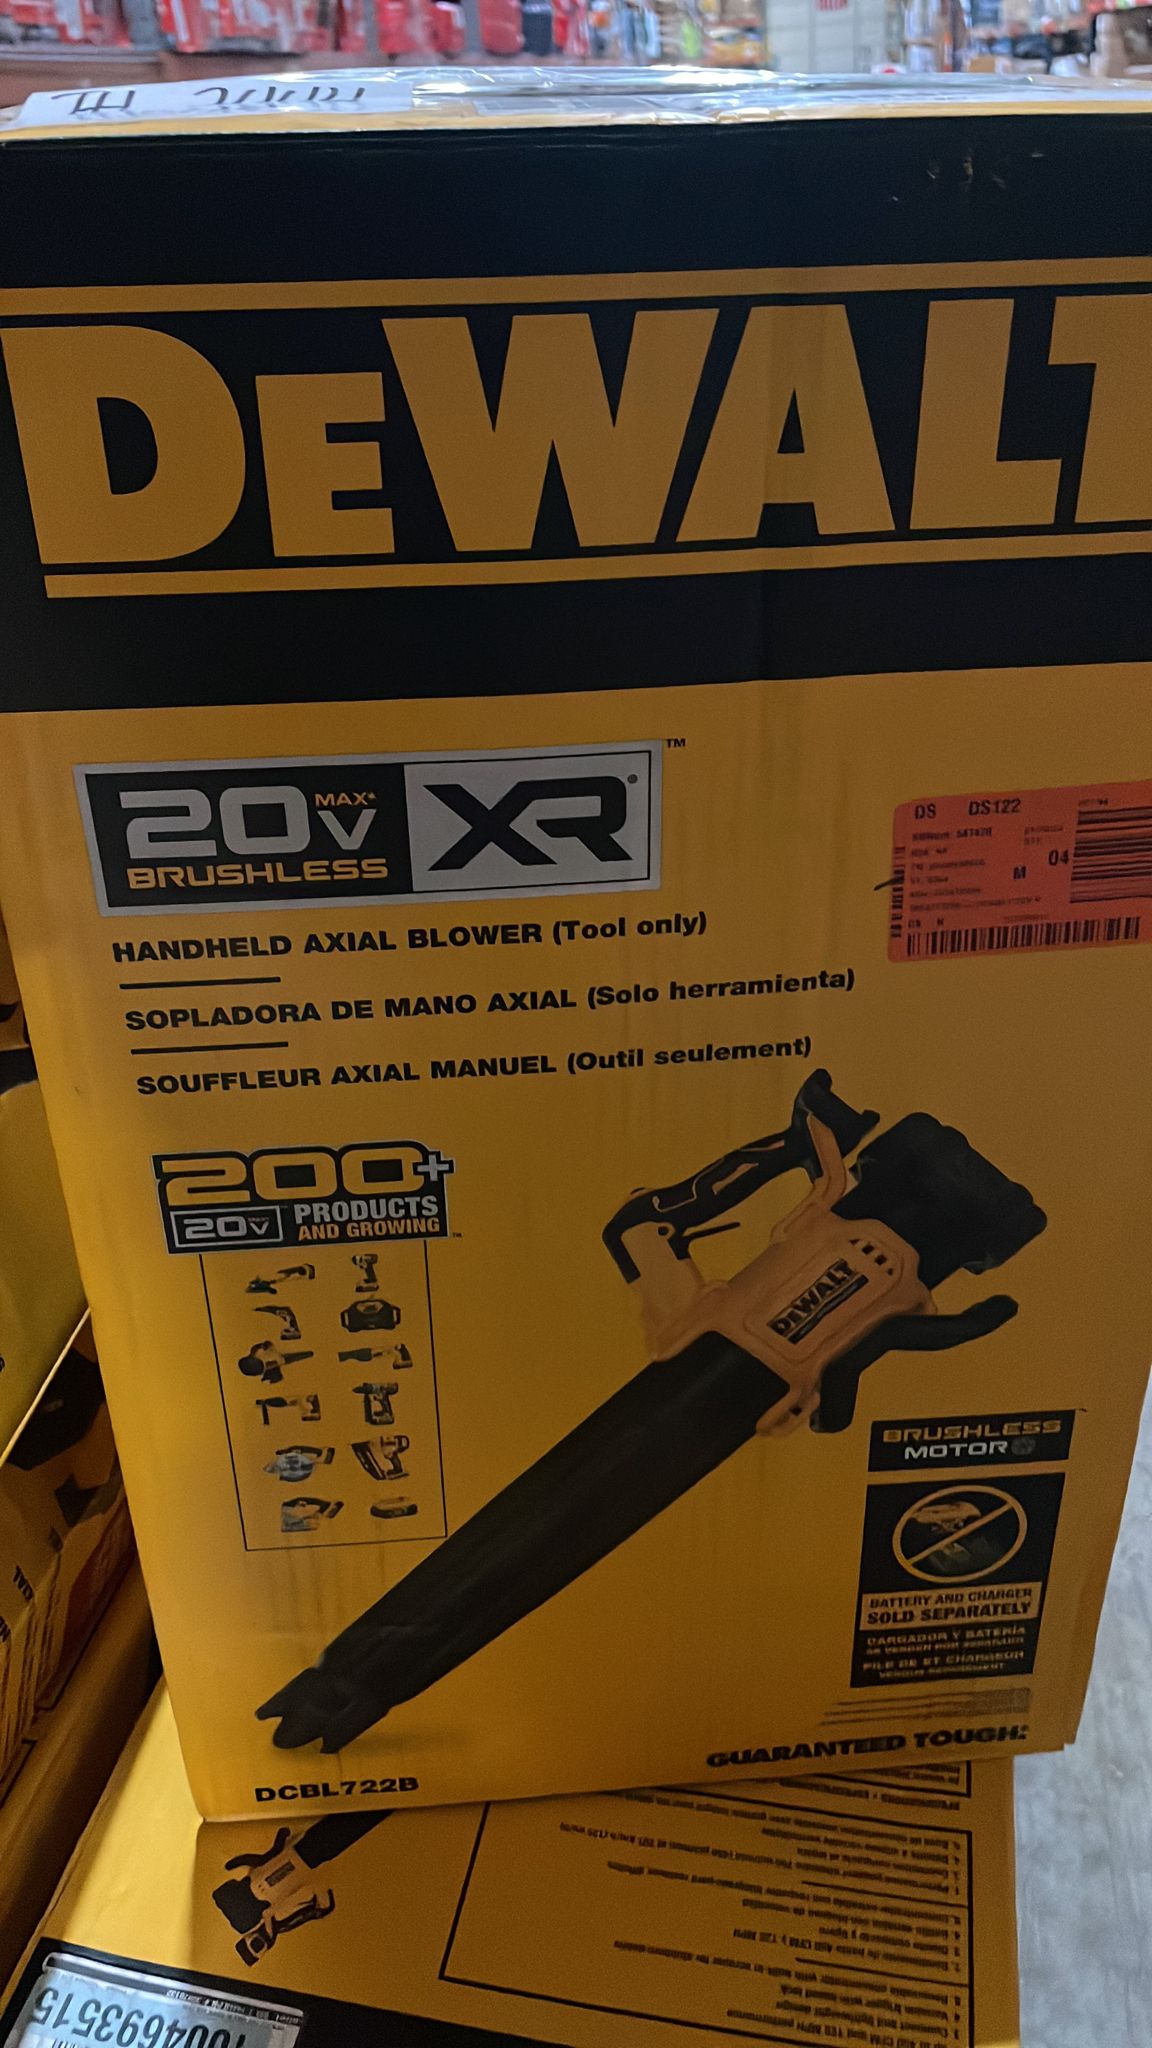 DEWALT 20V MAX 125 MPH 450 CFM Battery Powered Handheld Leaf Blower (Tool Only) - $110